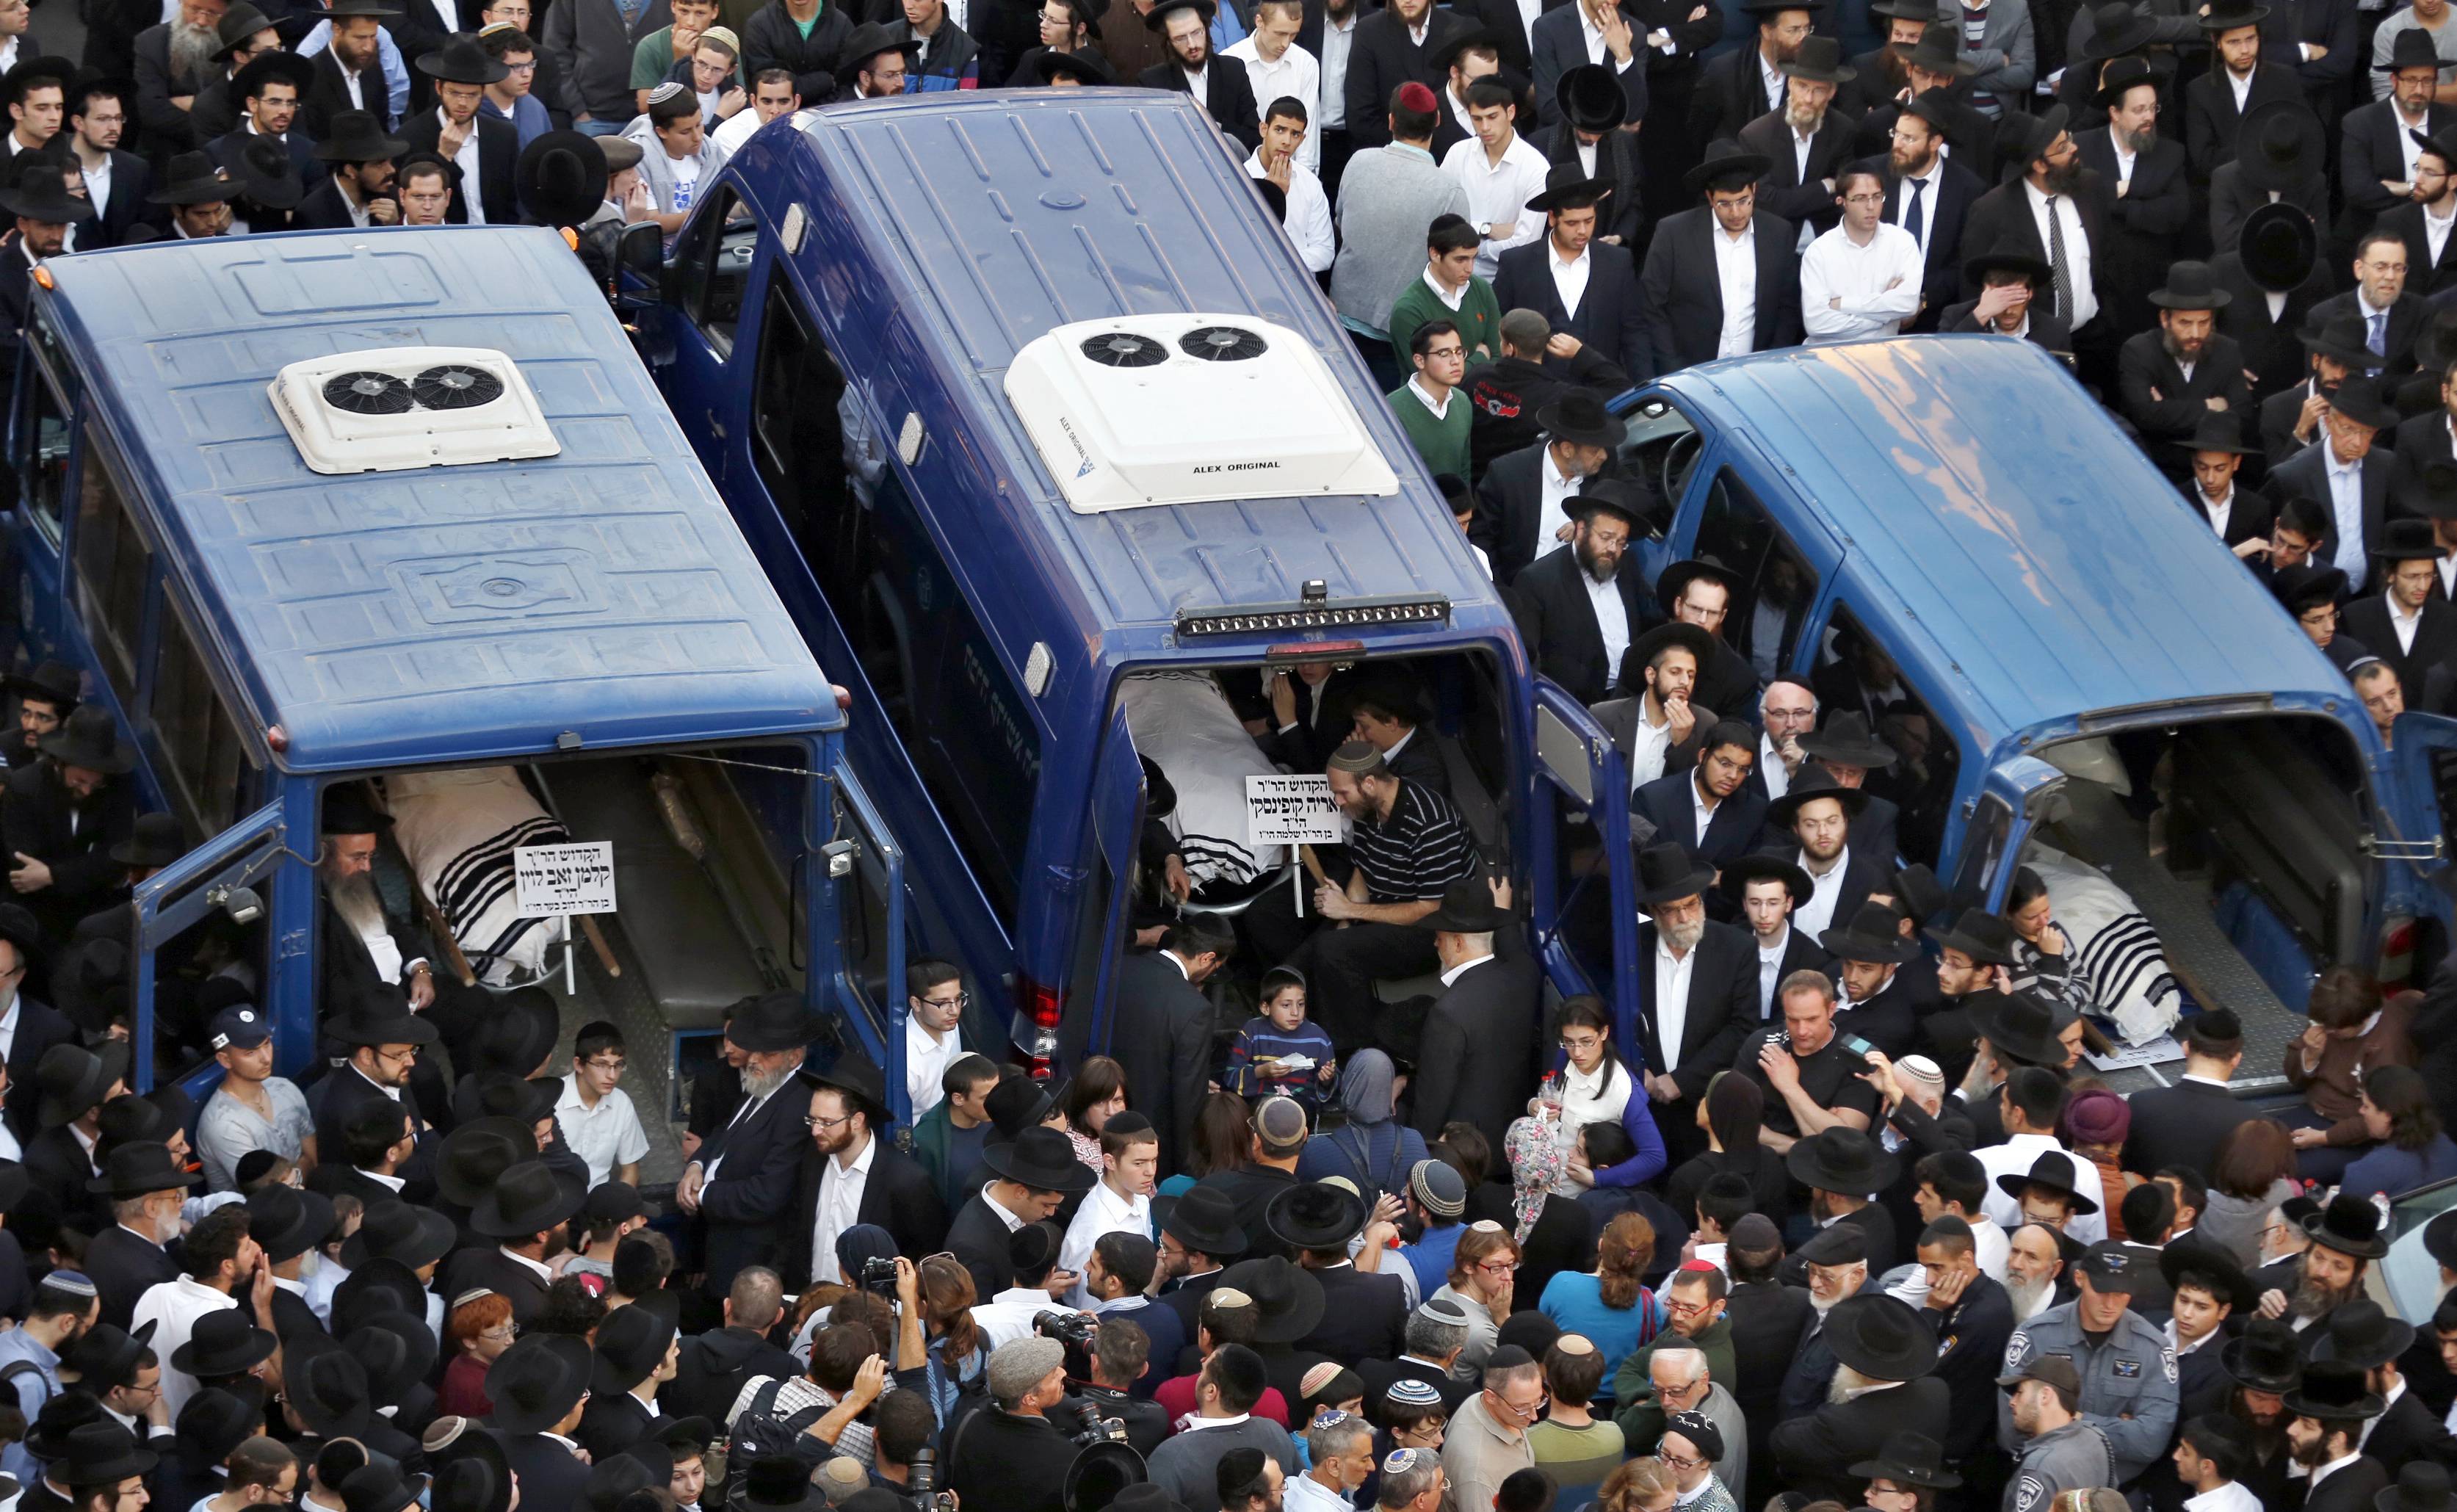 Στους πέντε οι νεκροί της επίθεσης σε συναγωγή στην Ιερουσαλήμ